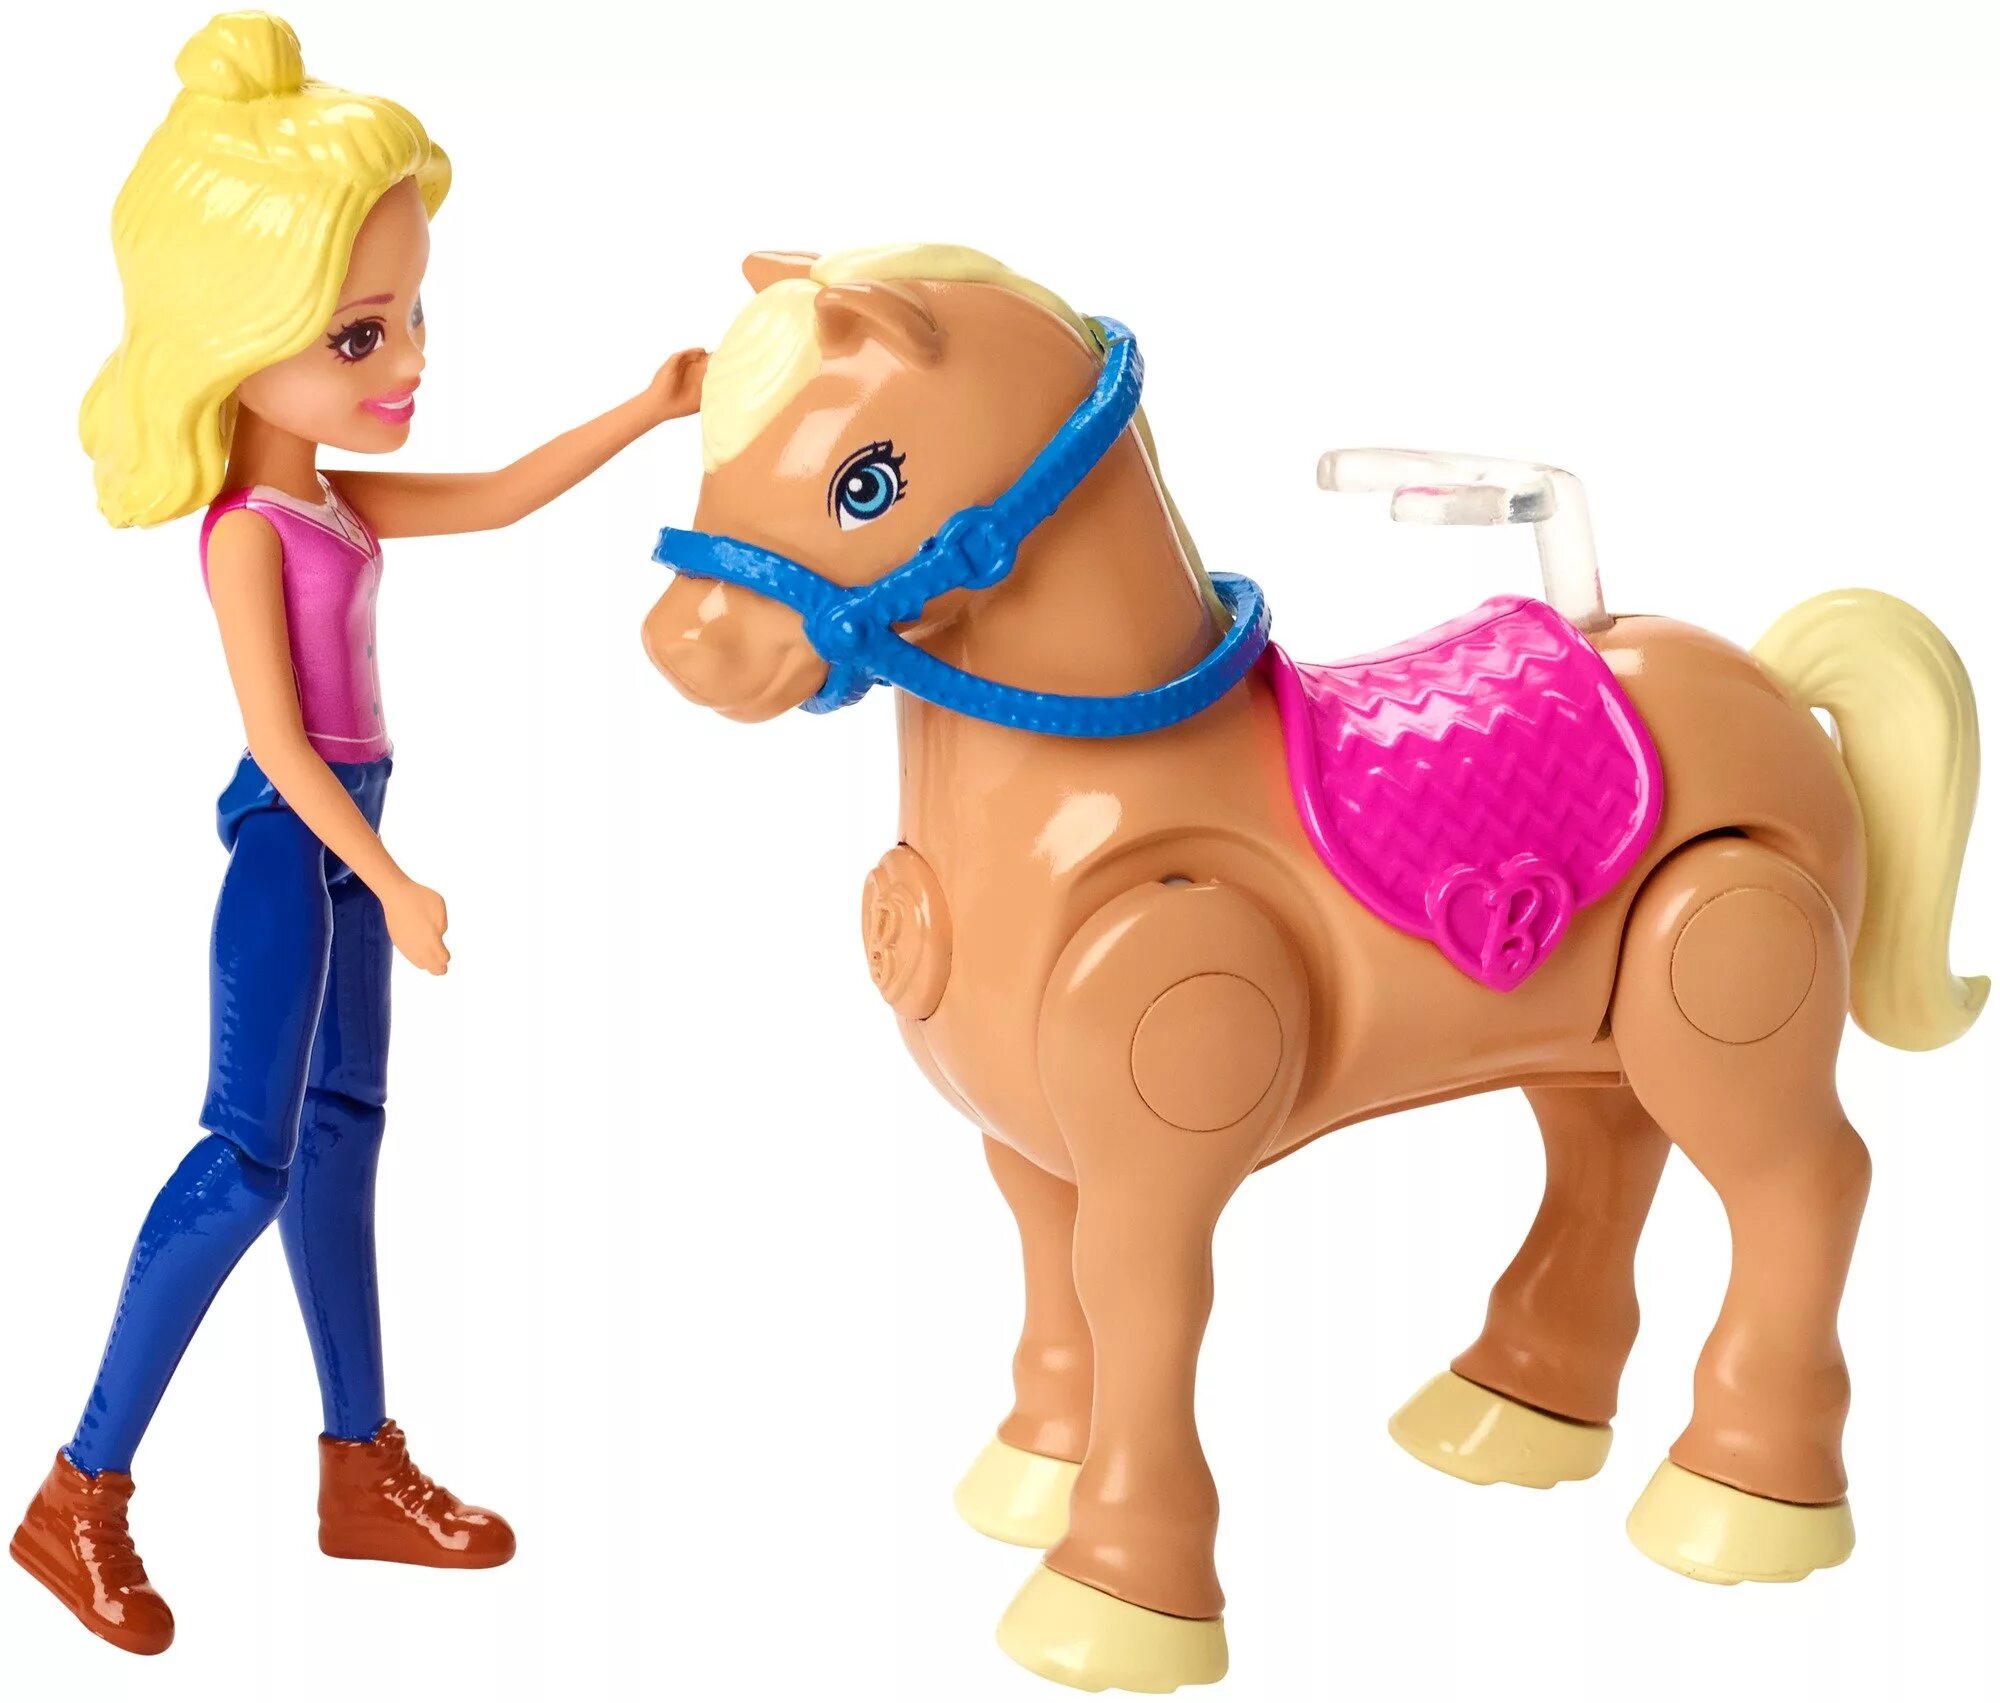 Лошадки го го. Набор Barbie в движении скачки, 10 см, fhv66. Популярные игрушки для девочек. Barbie в движении игровой набор. Барби с лошадью.